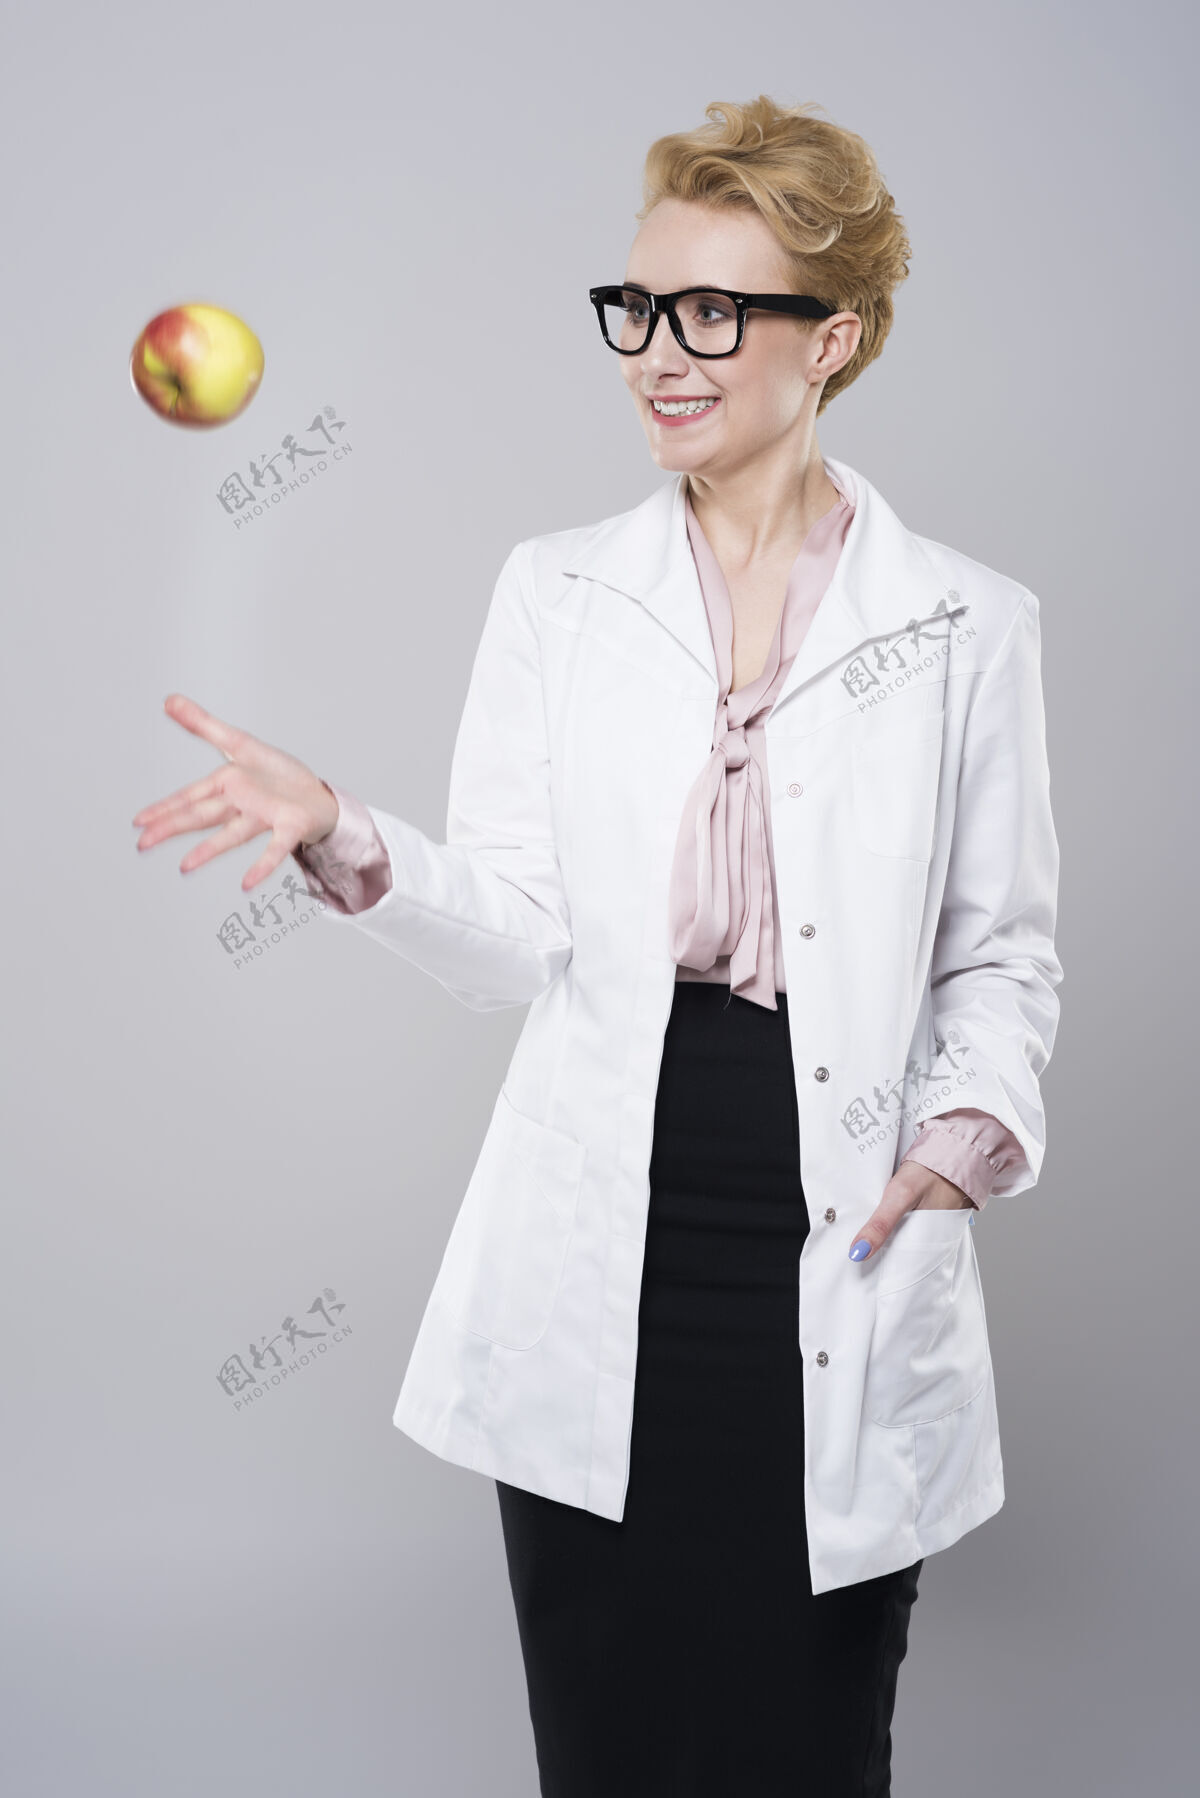 短发女医生扔苹果抛牙齿健康医疗职业